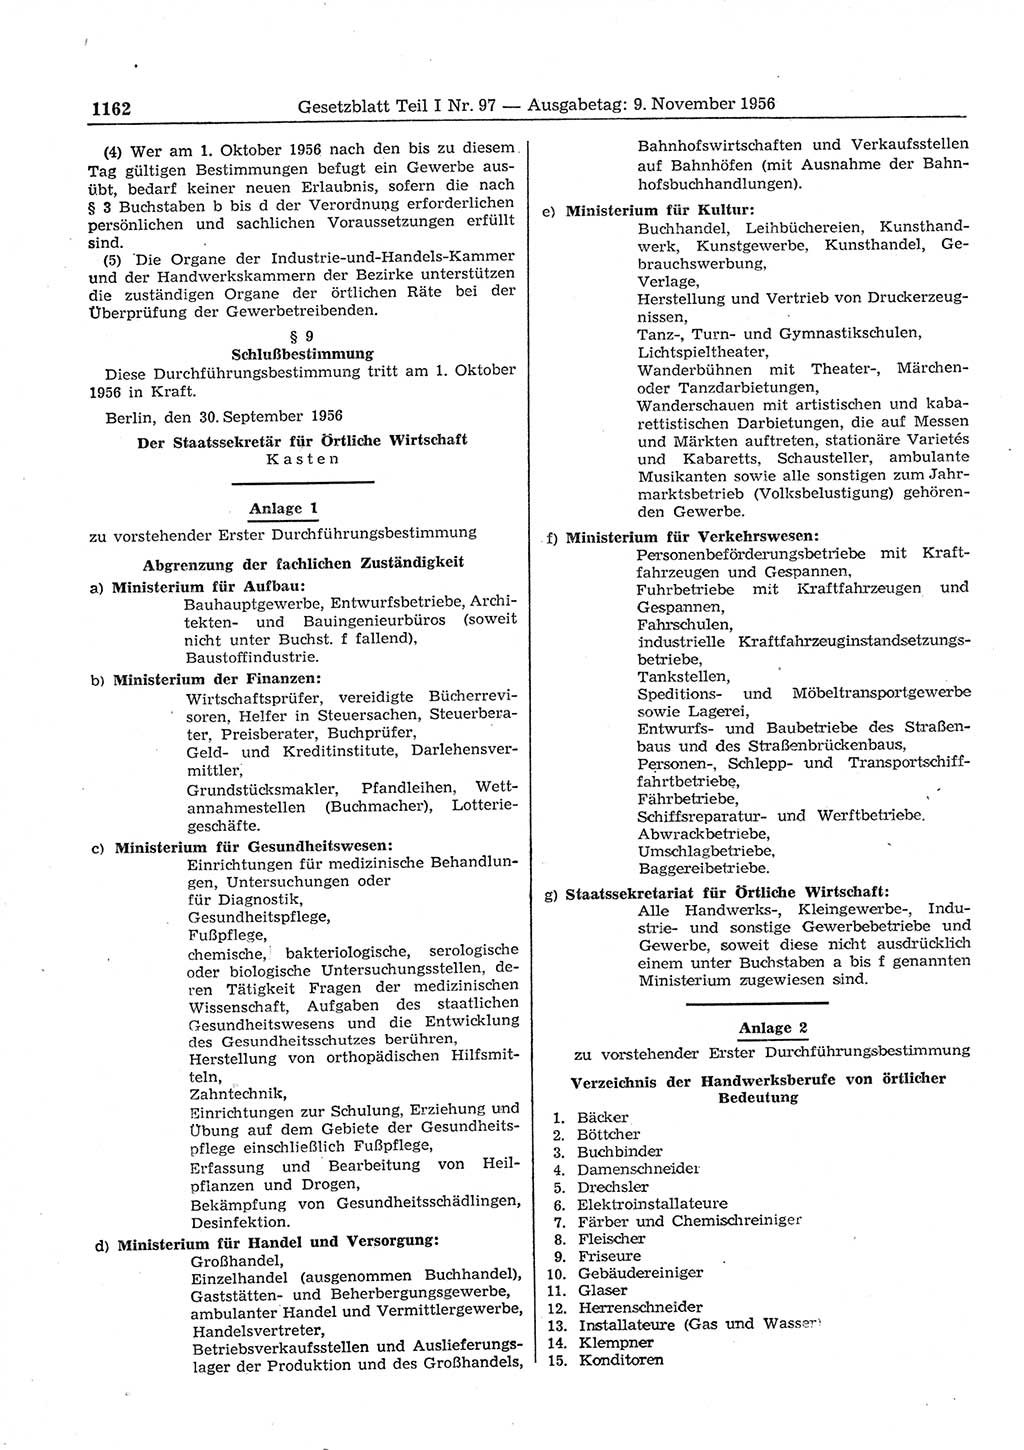 Gesetzblatt (GBl.) der Deutschen Demokratischen Republik (DDR) Teil Ⅰ 1956, Seite 1162 (GBl. DDR Ⅰ 1956, S. 1162)